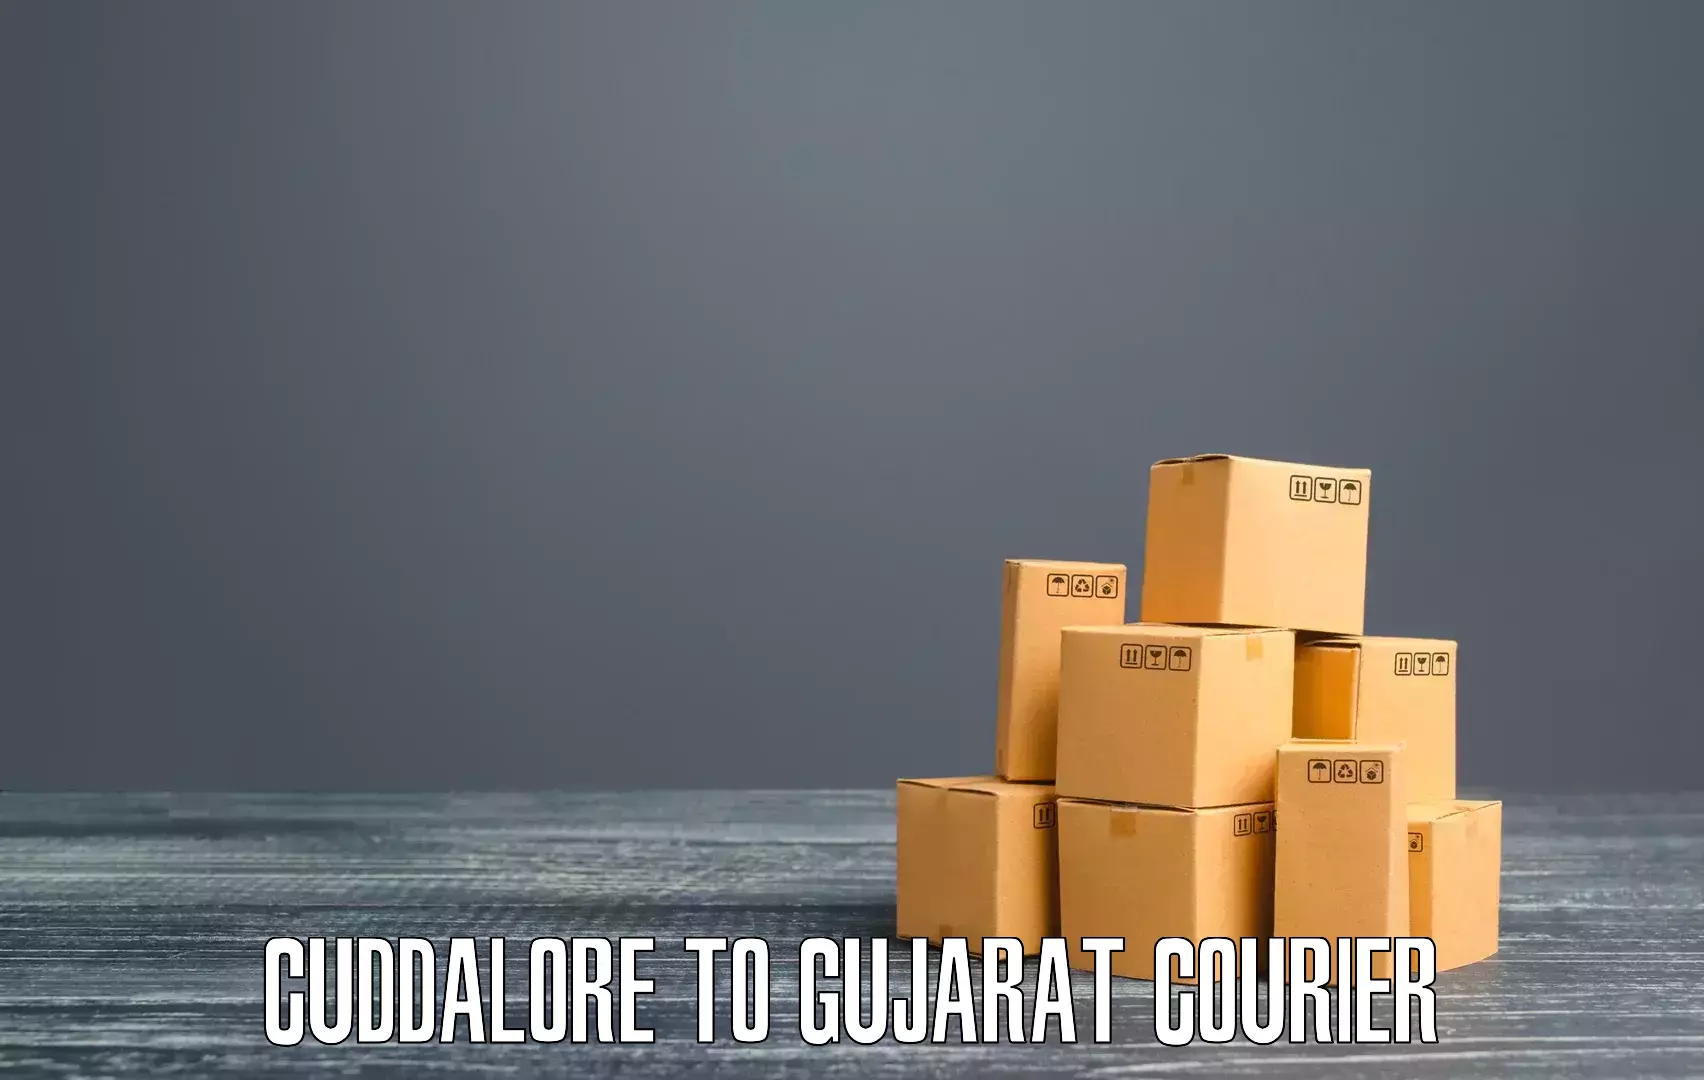 High-capacity parcel service Cuddalore to Gujarat